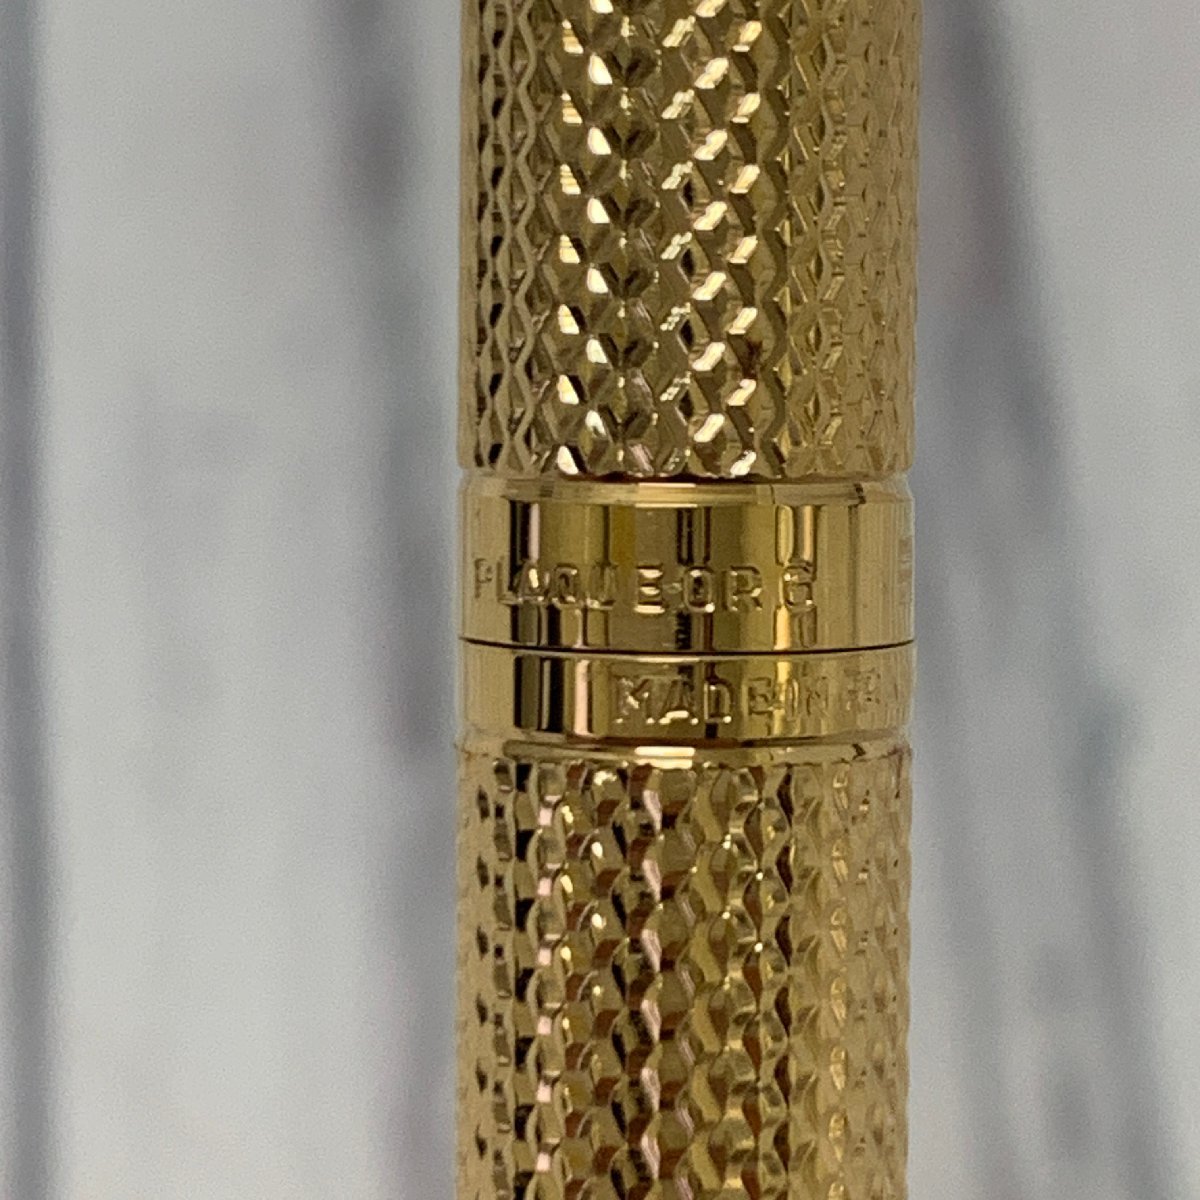 s001 A3.1 保管品 WATERMAN ウォーターマン 万年筆 ペン先 18K 750 WATERMAN C/F シルバーカラー＆ボールペン ゴールドカラー 2本で_画像9